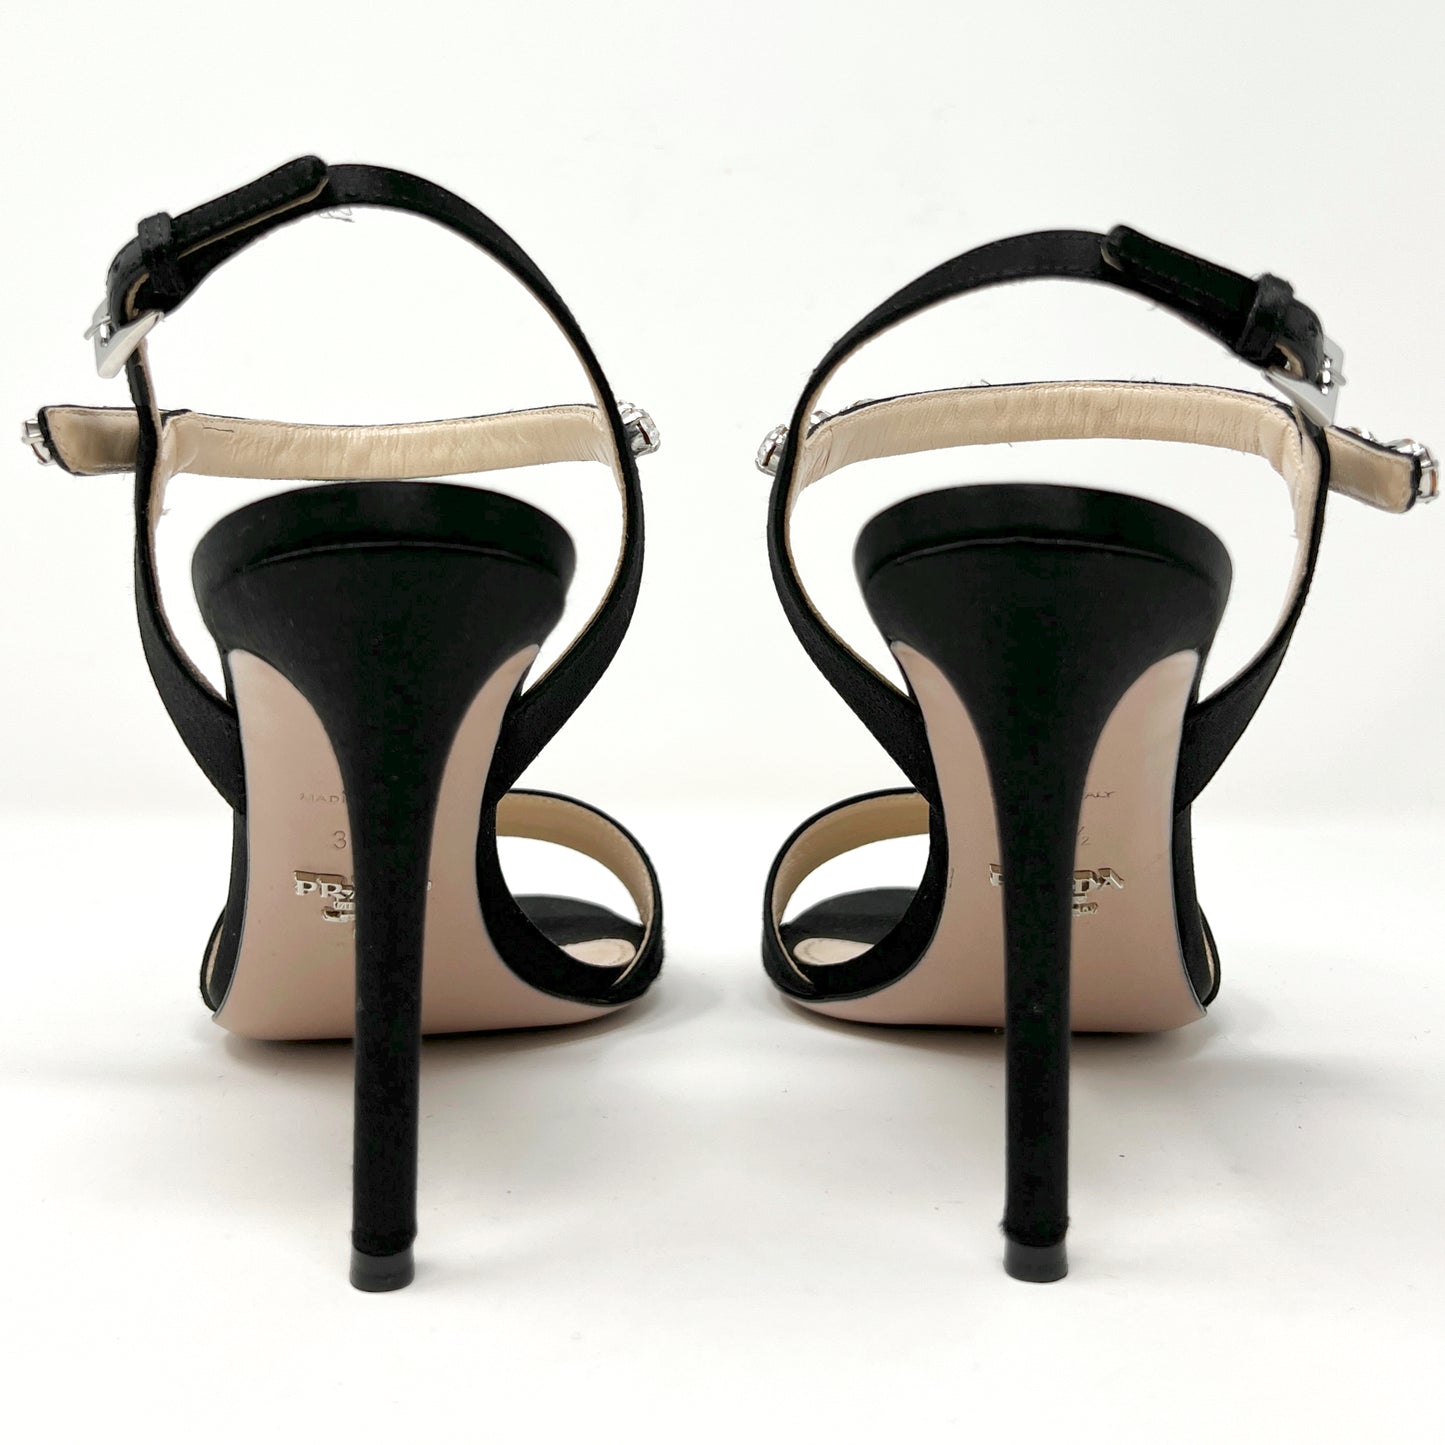 Prada Black Satin Crystal Embellished Sandals Size EU 38.5